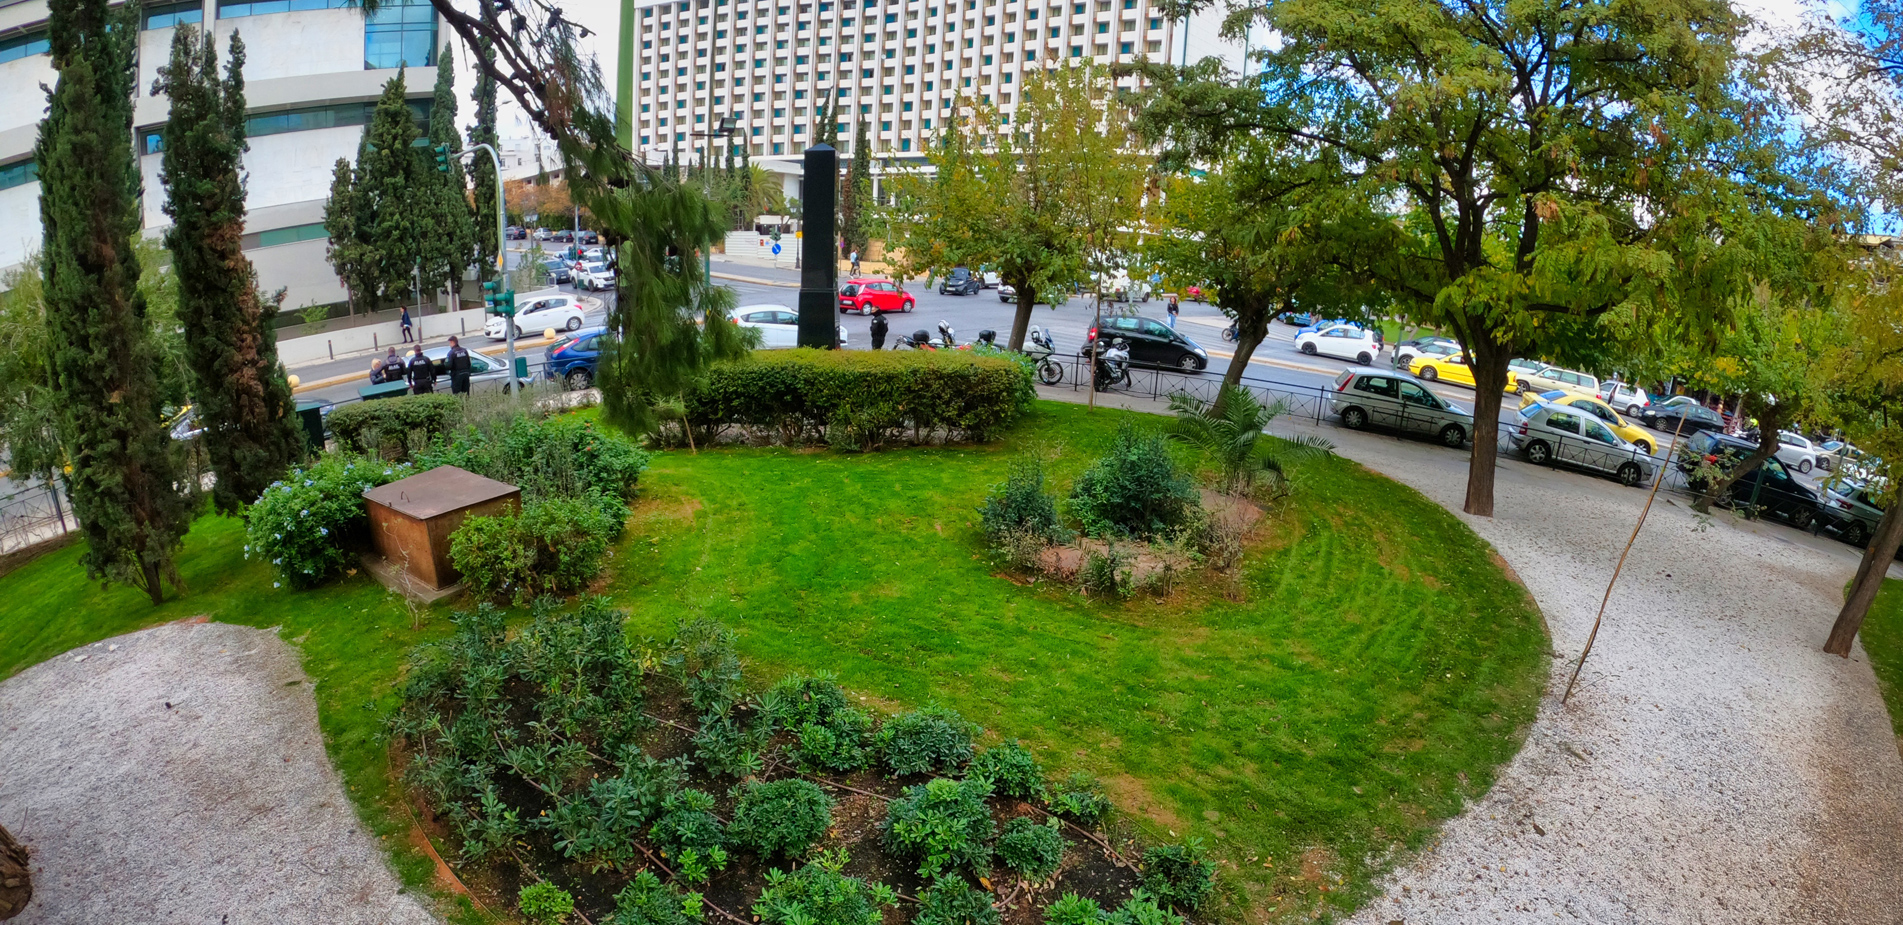 Άρωμα» Ιαπωνίας στην Αθήνα: Ο πρώτος ιαπωνικός κήπος γεμάτος κερασιές, 50 νέα δέντρα και 3.000 θάμνους είναι γεγονός - Newsbeast